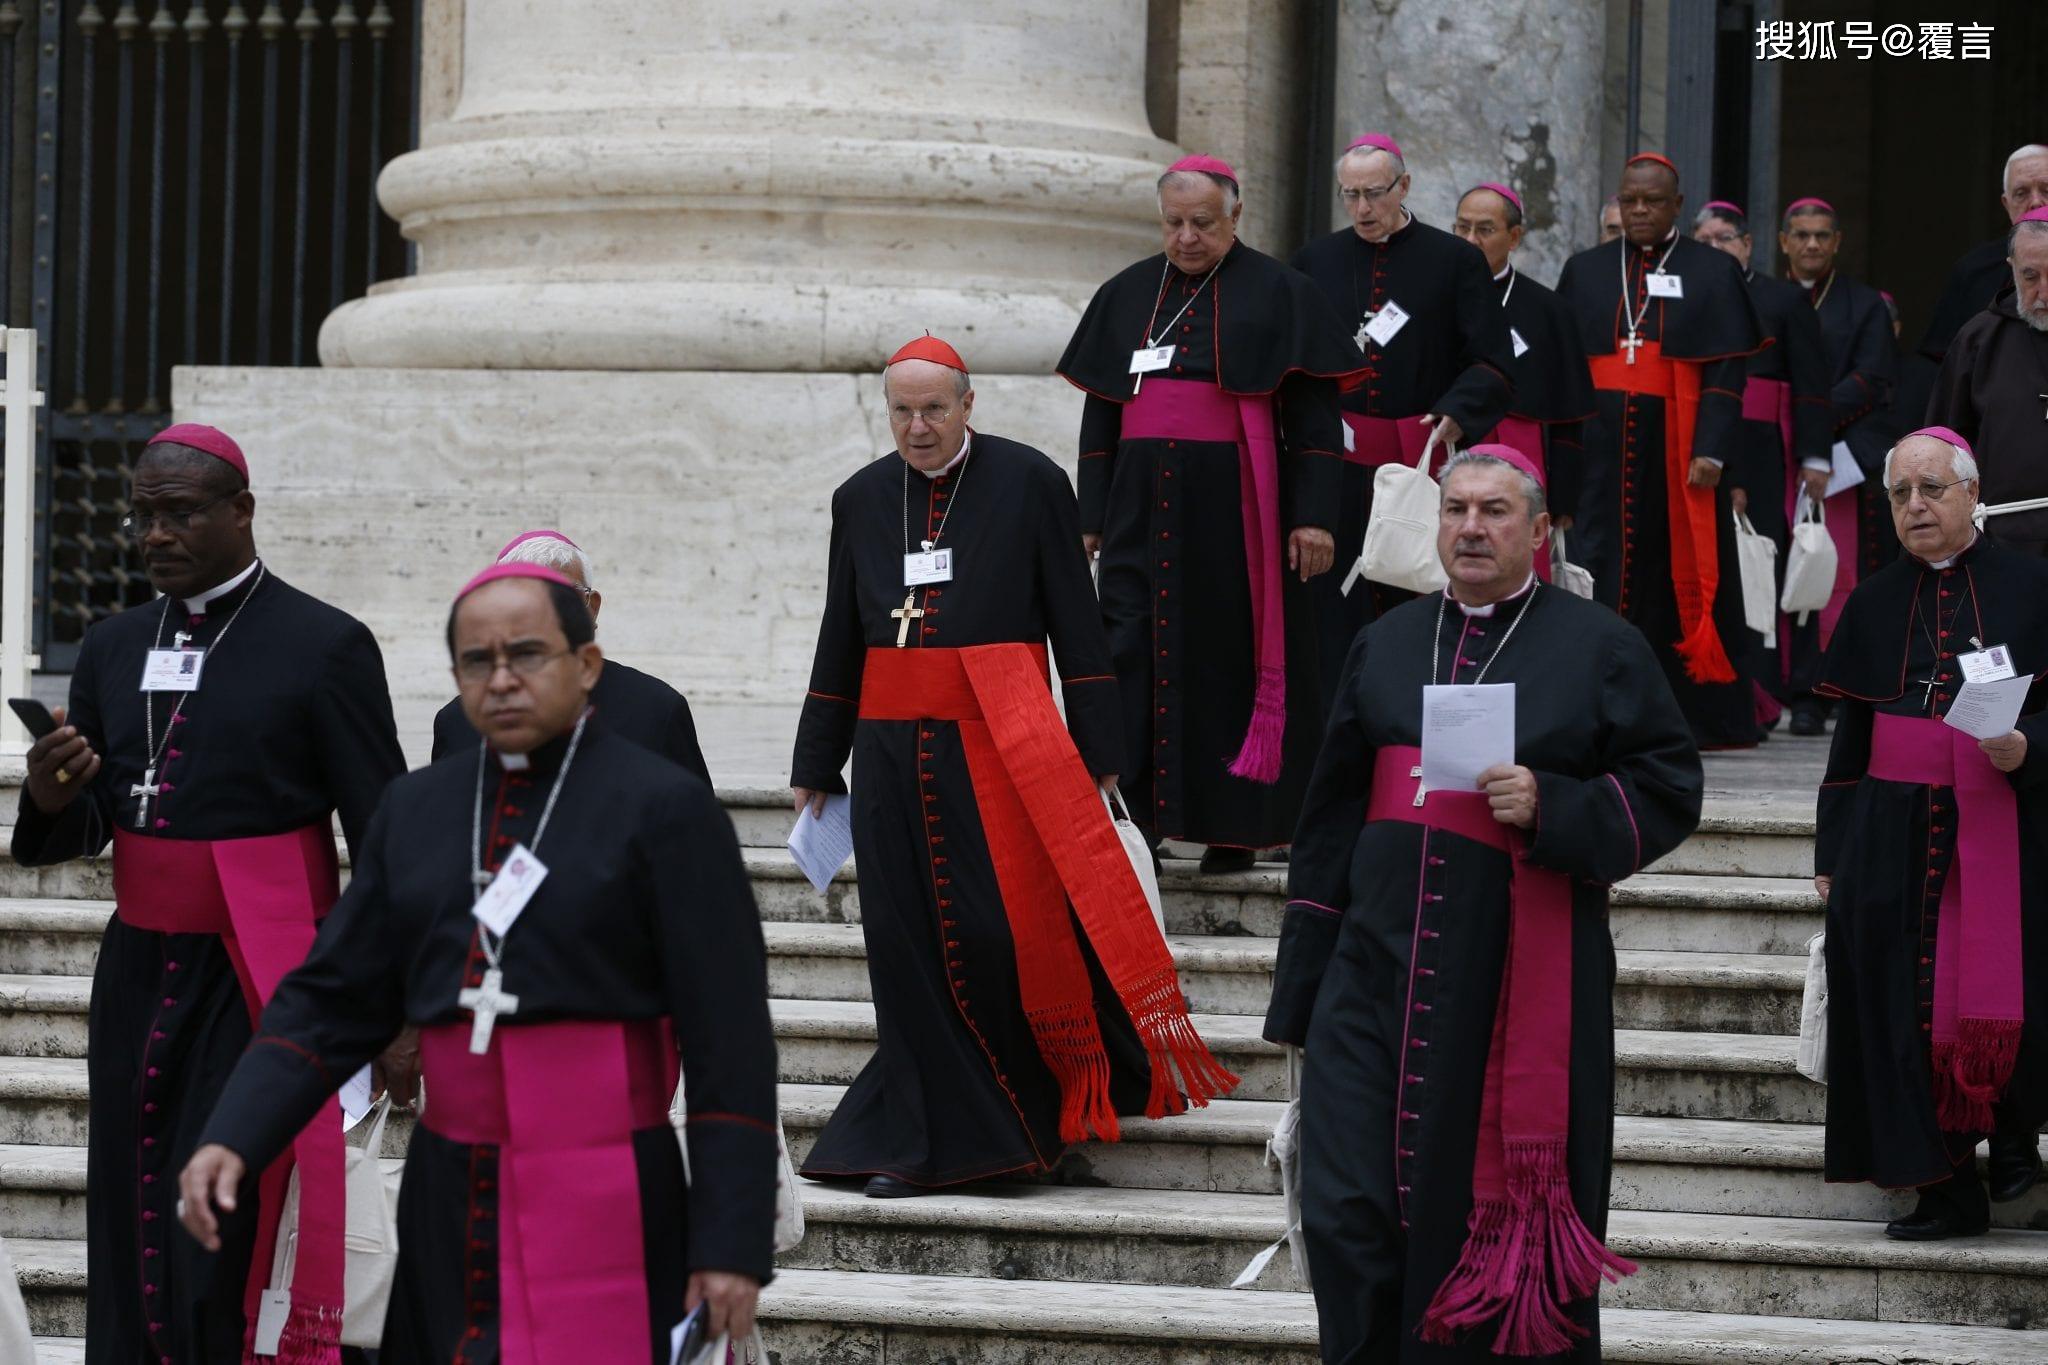 天主教的神父们此外,梵蒂冈虽然是一个小国,但却拥有巨额的财富.